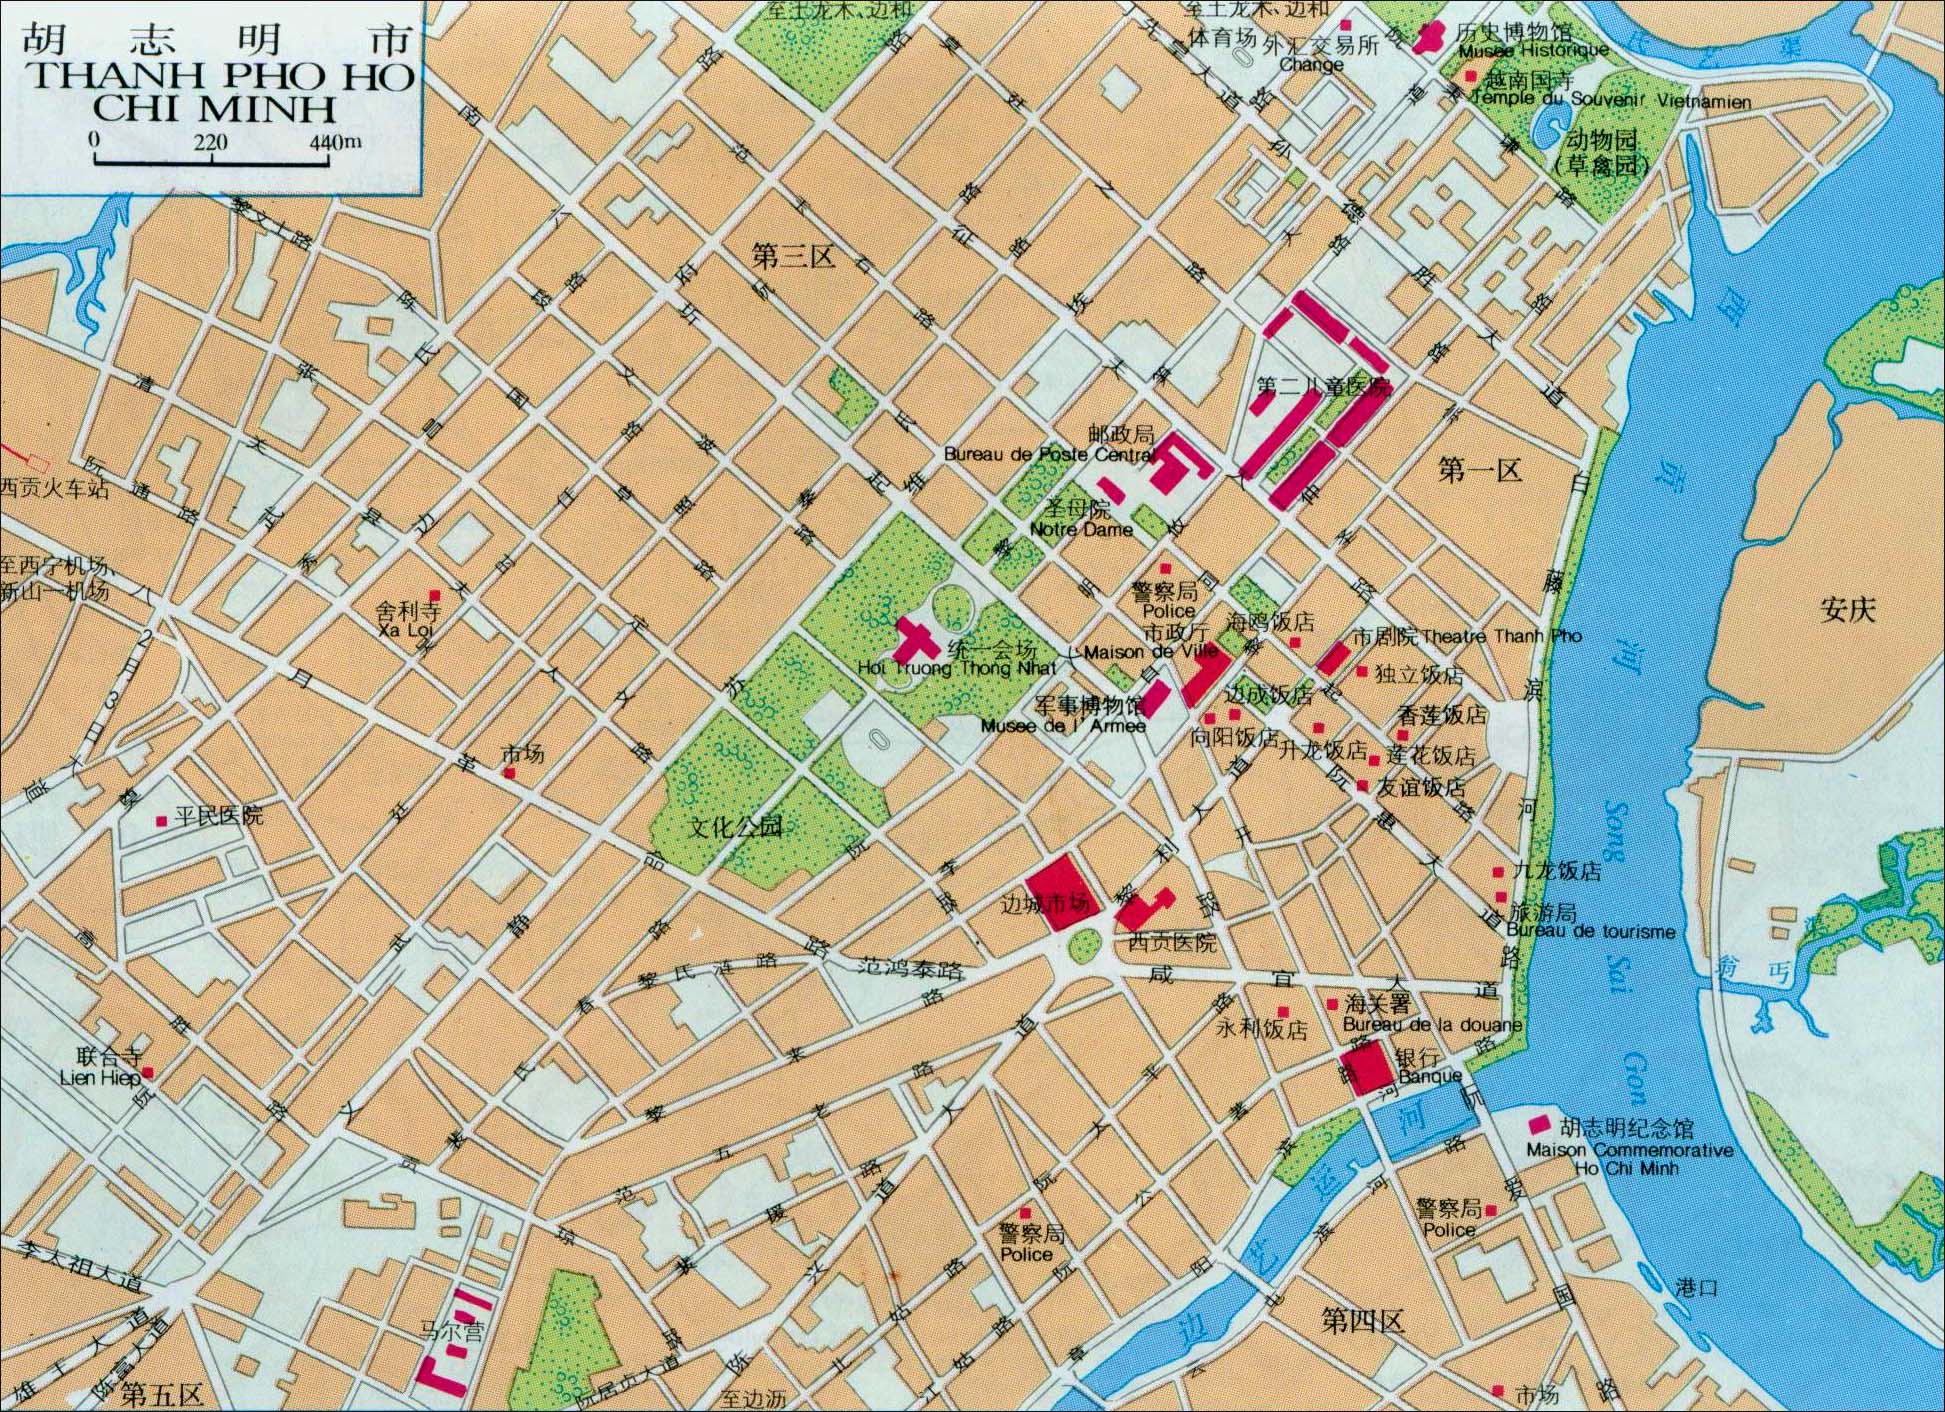 世界地图 亚洲 越南 >> 胡志明市地图  上一幅地图: 红河三角洲地图图片